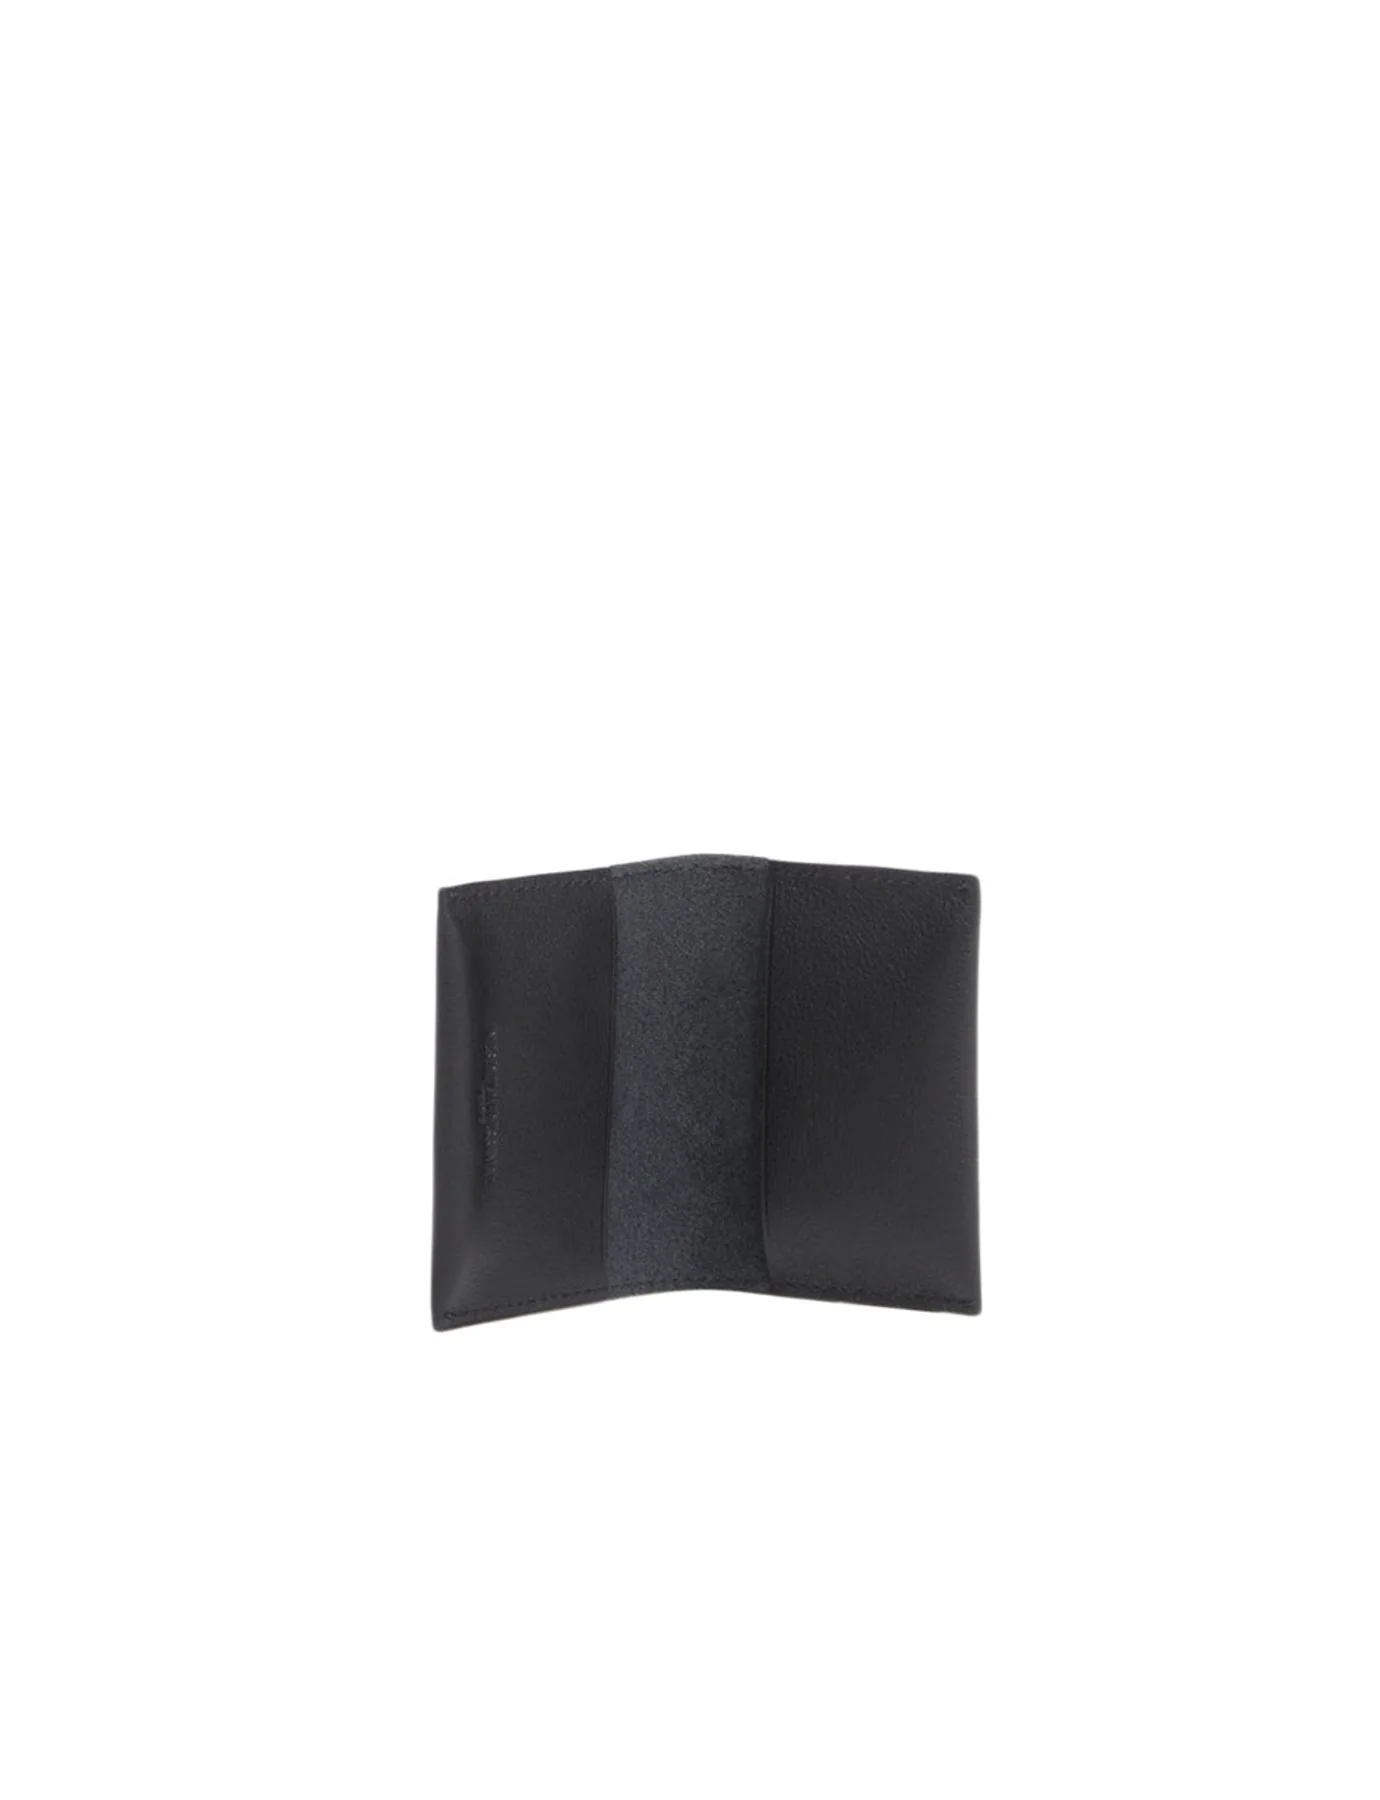 double-cardholder-parisian-leather-black